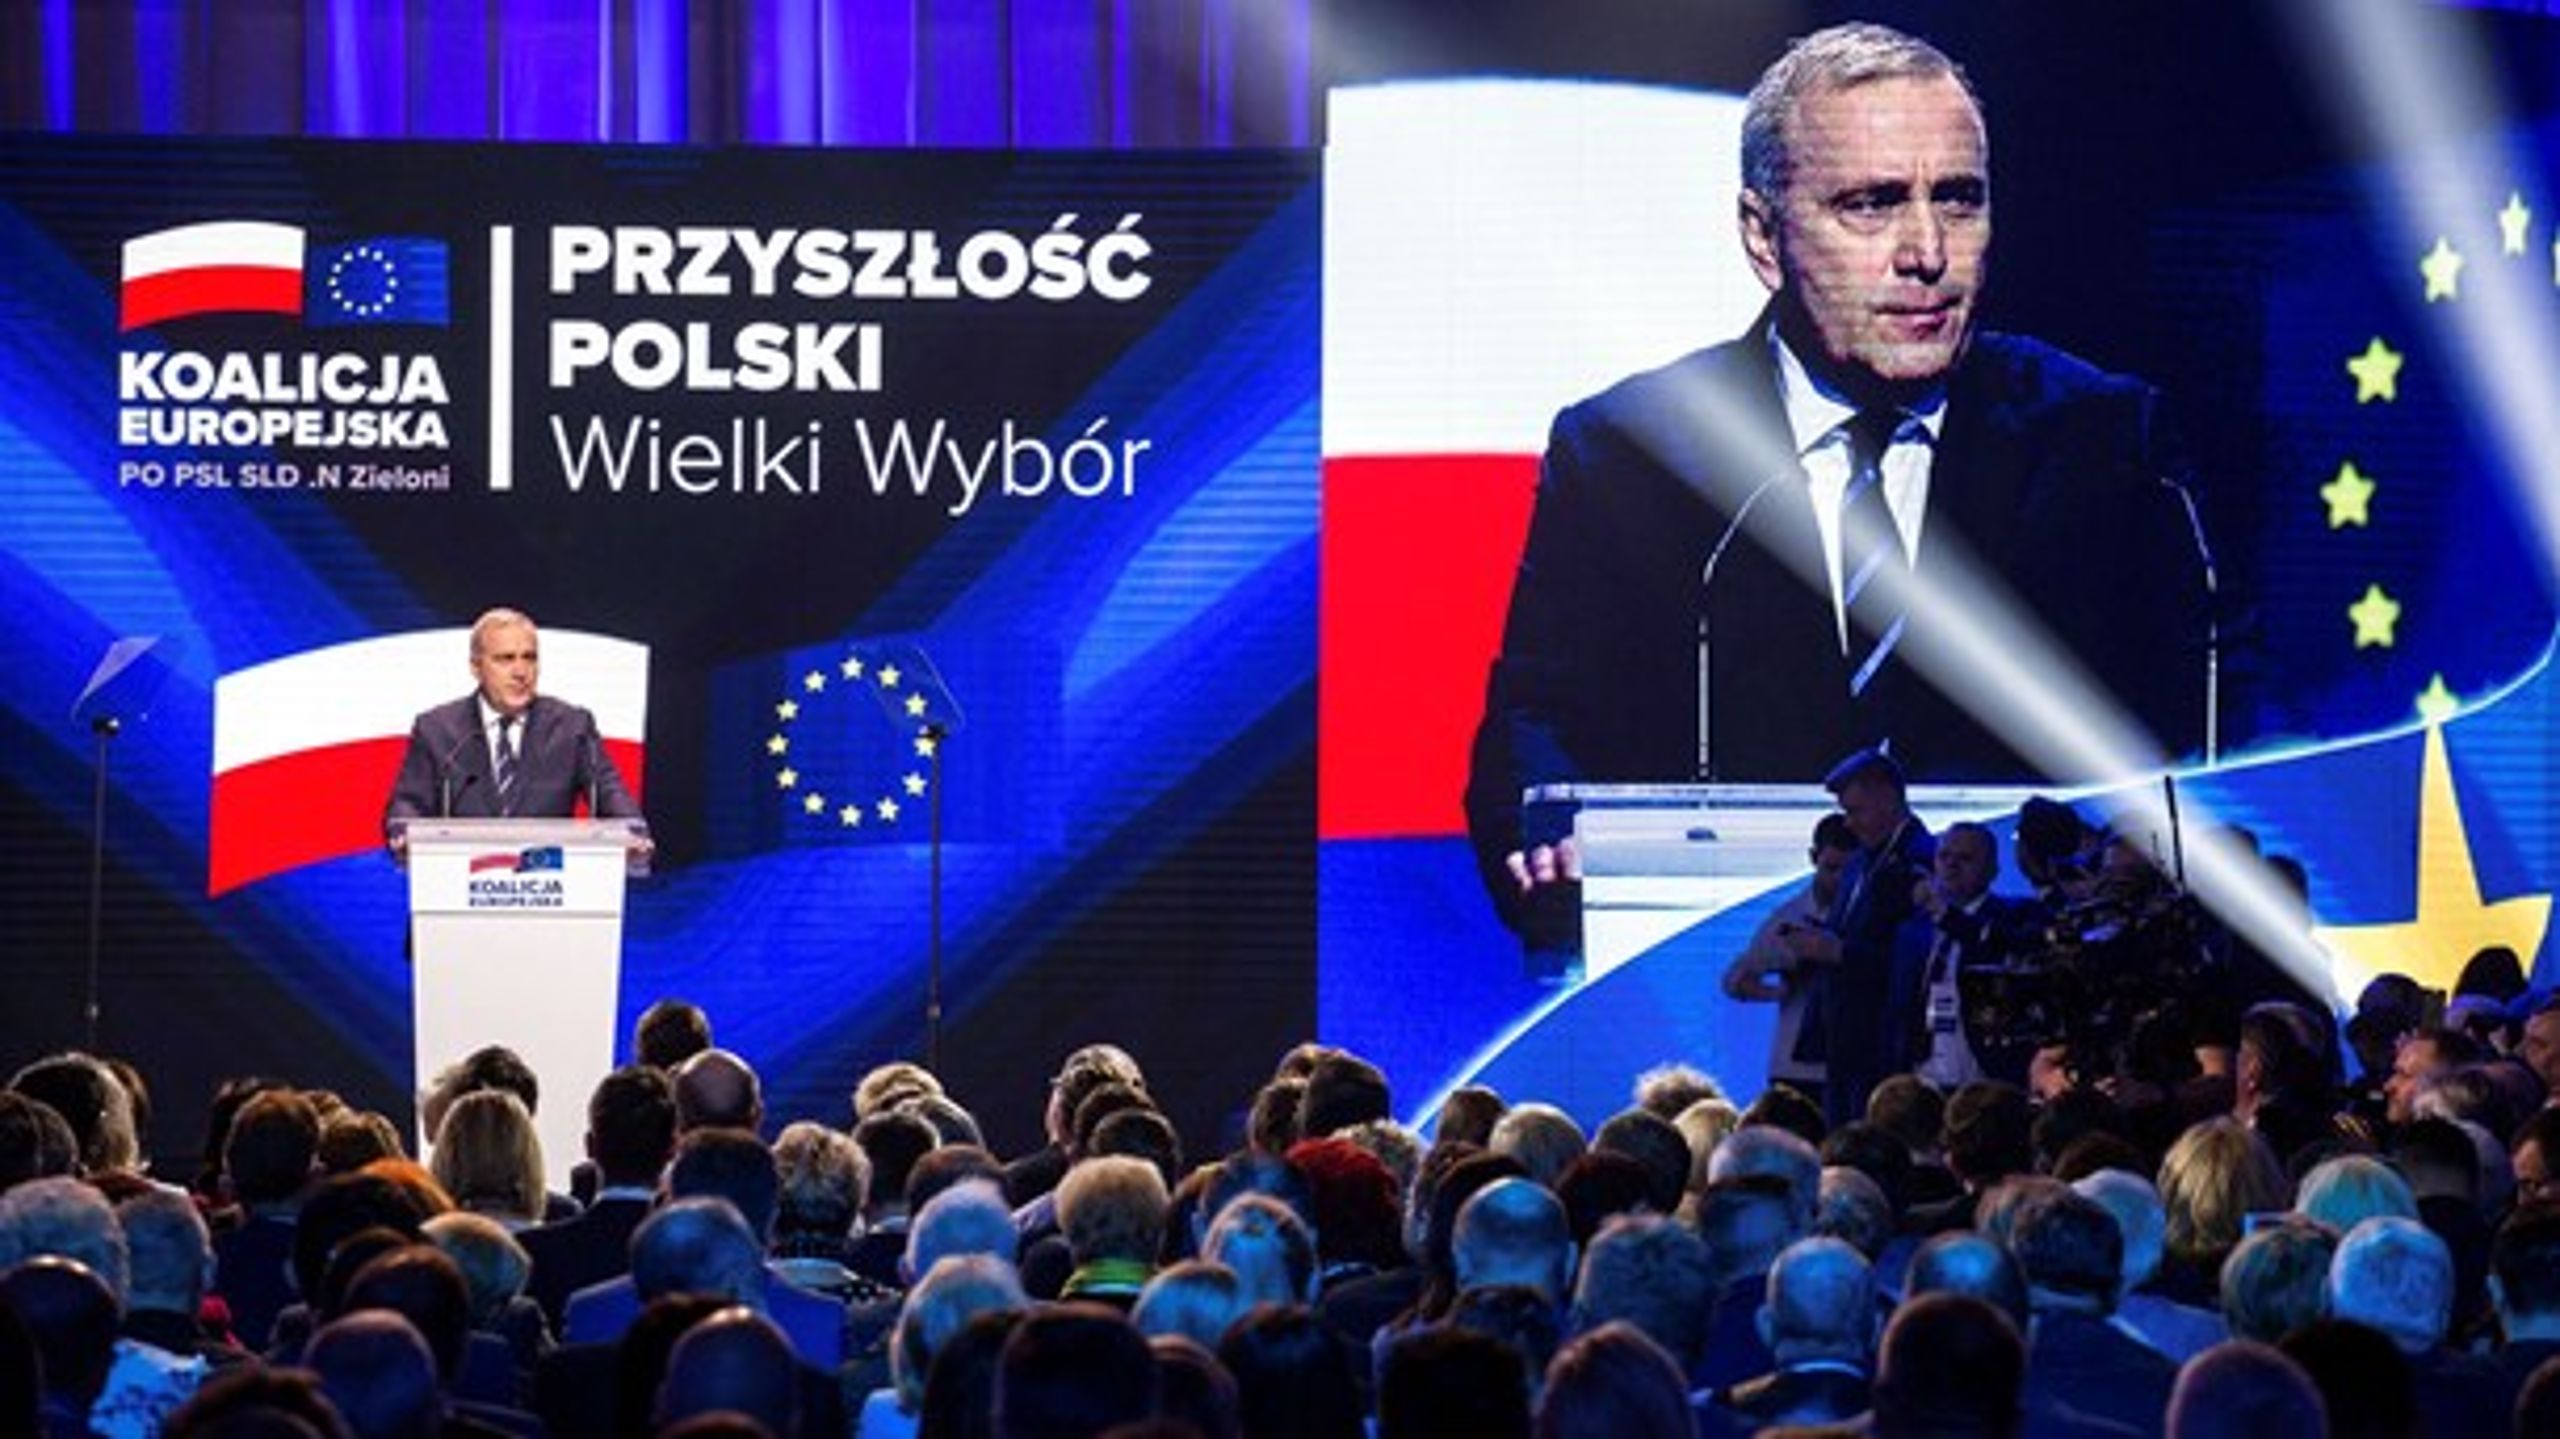 Partiet Borgerplatformens leder, Grzegorz Schetyna, har skabt en europæisk koalition med fire andre polske oppositionspartier på tværs af midten.